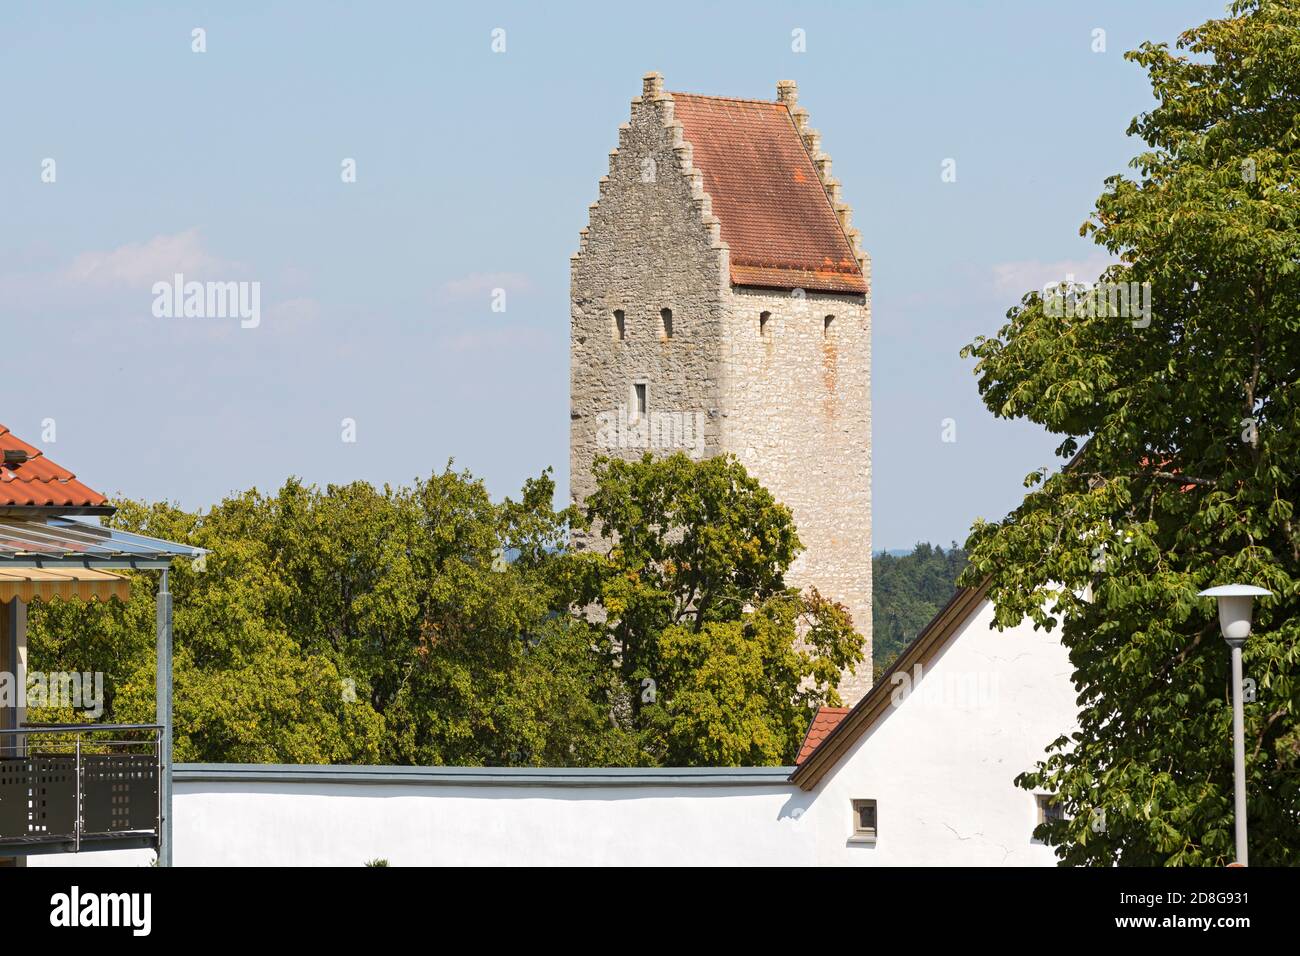 Beilngries, Schloss Hirschberg, Wehrturm Stock Photo